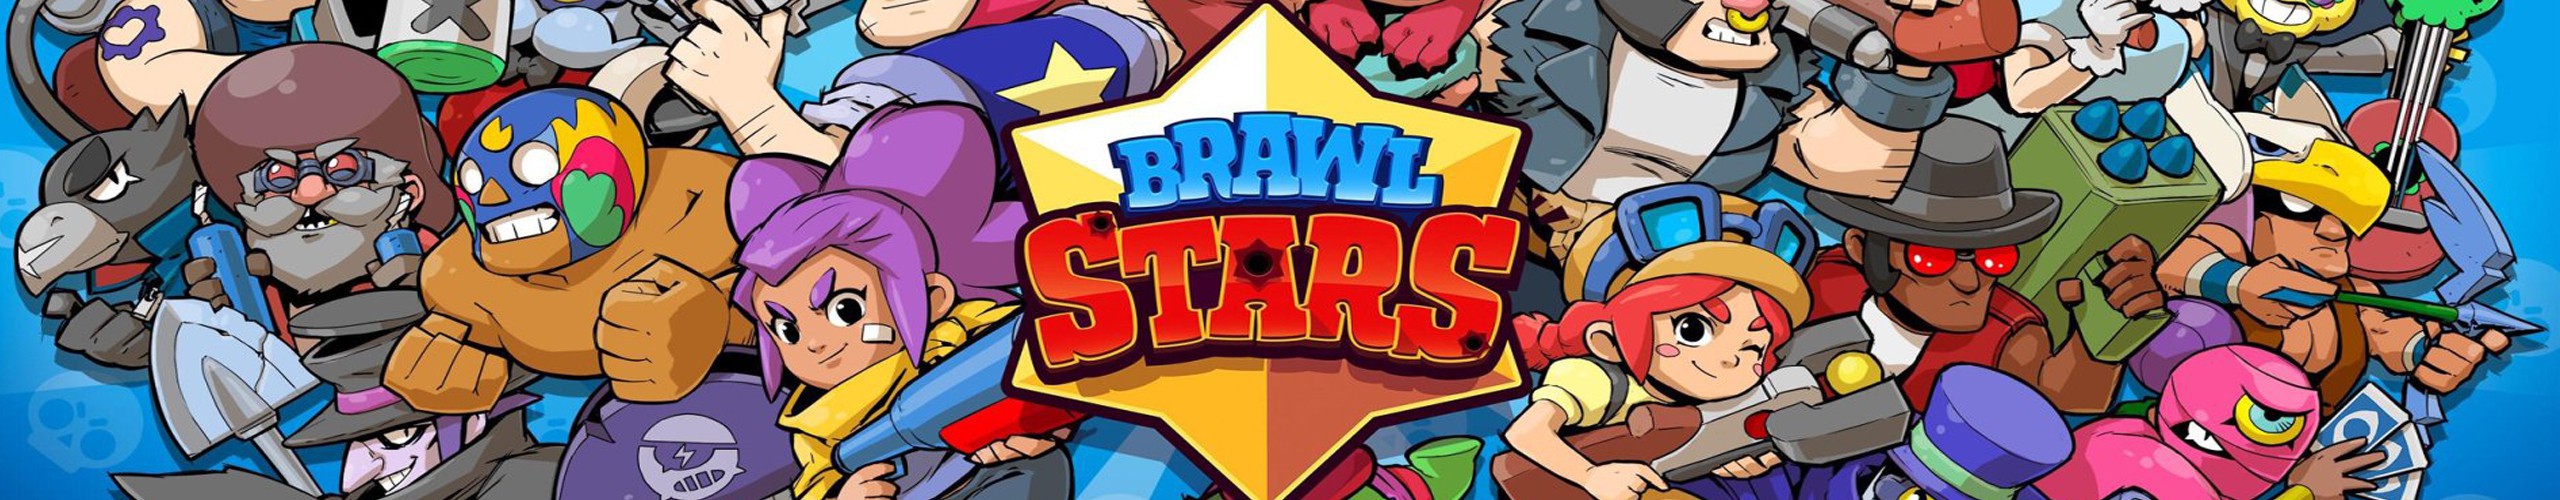 Joue à Brawl Stars, réalise des quêtes et gagne des cadeaux😃